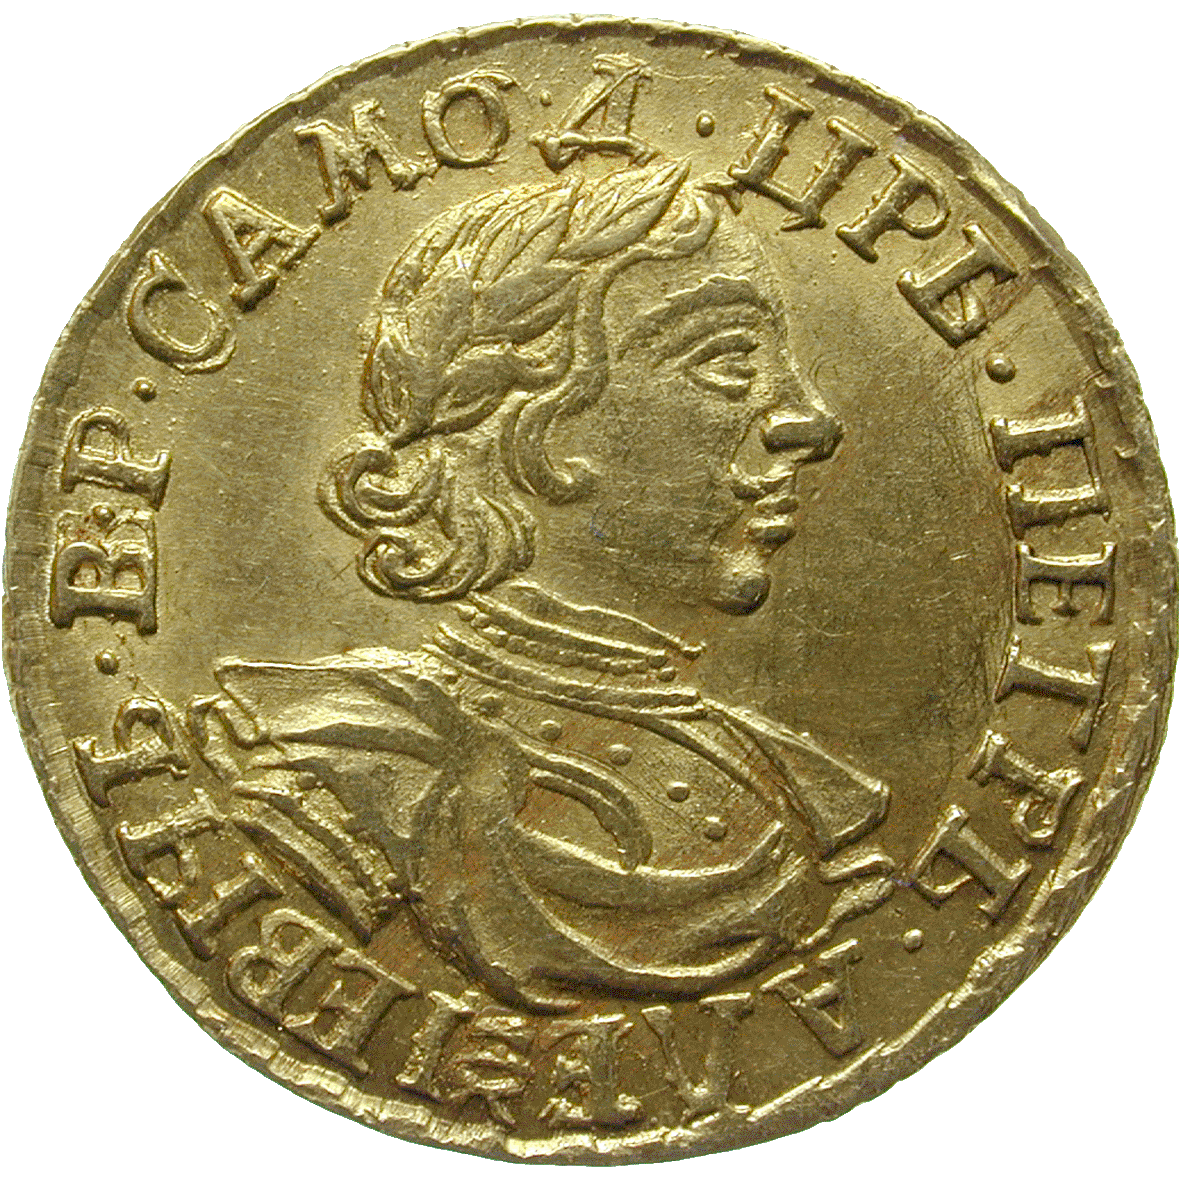 Zarenreich Russland, Peter I. der Grosse, Doppelrubel 1718 (obverse)